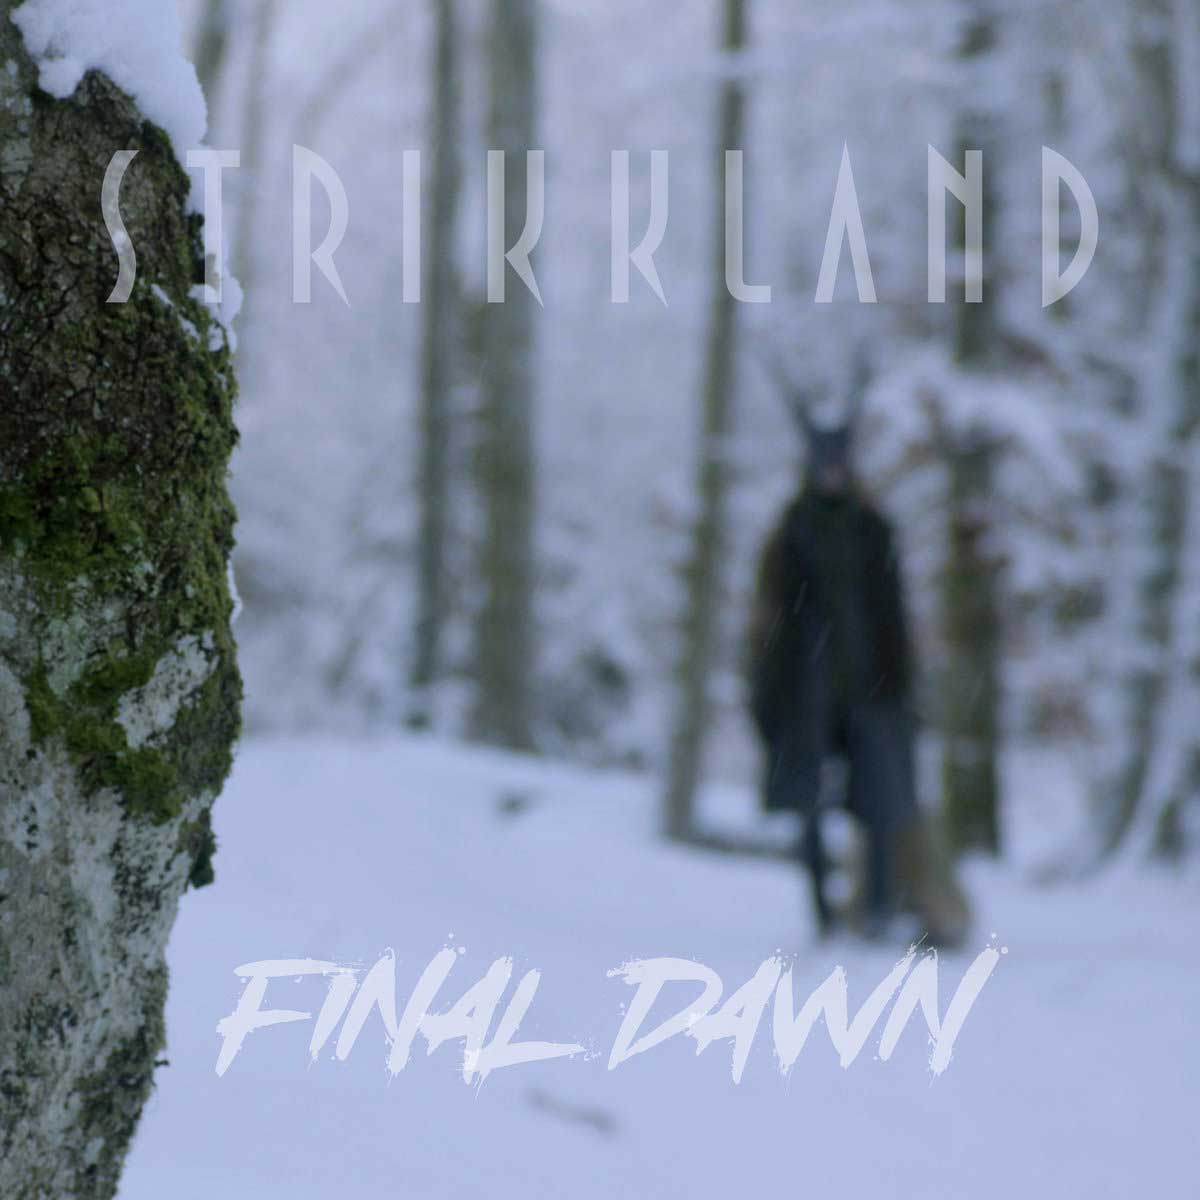 Strikkland - Final Dawn - Strikkland - Final Dawn